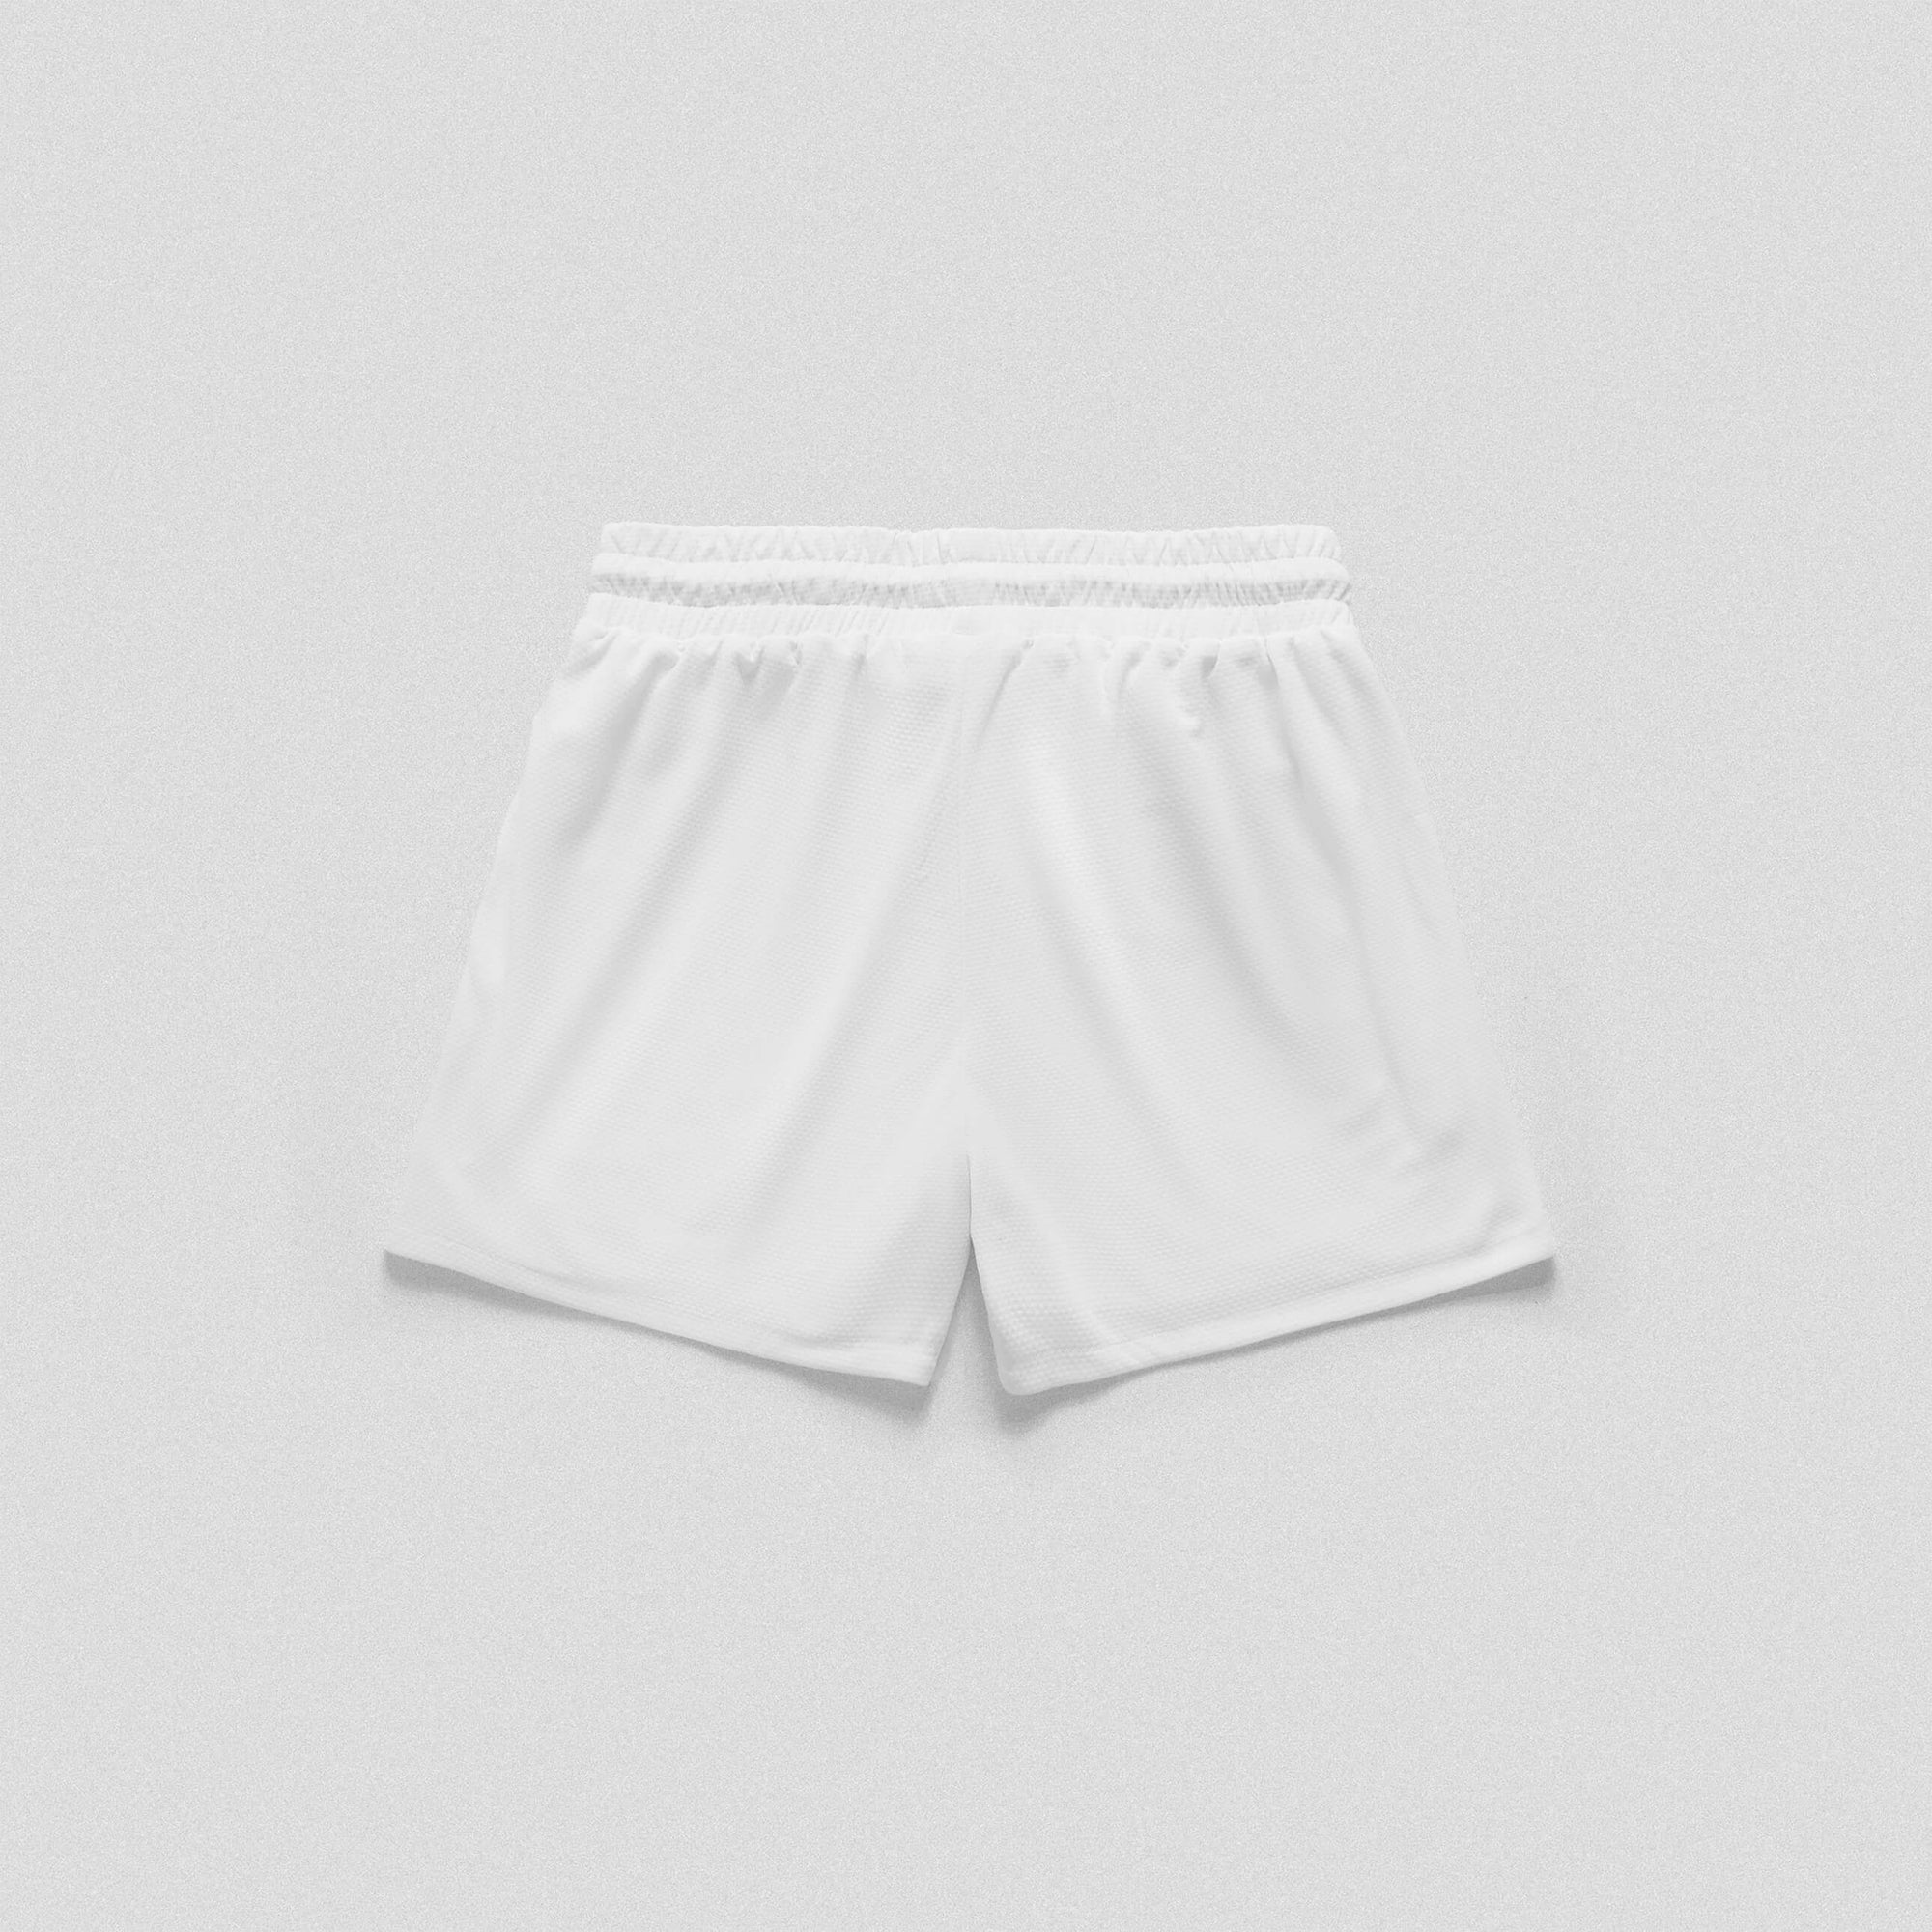 mesh shorts white balboa back